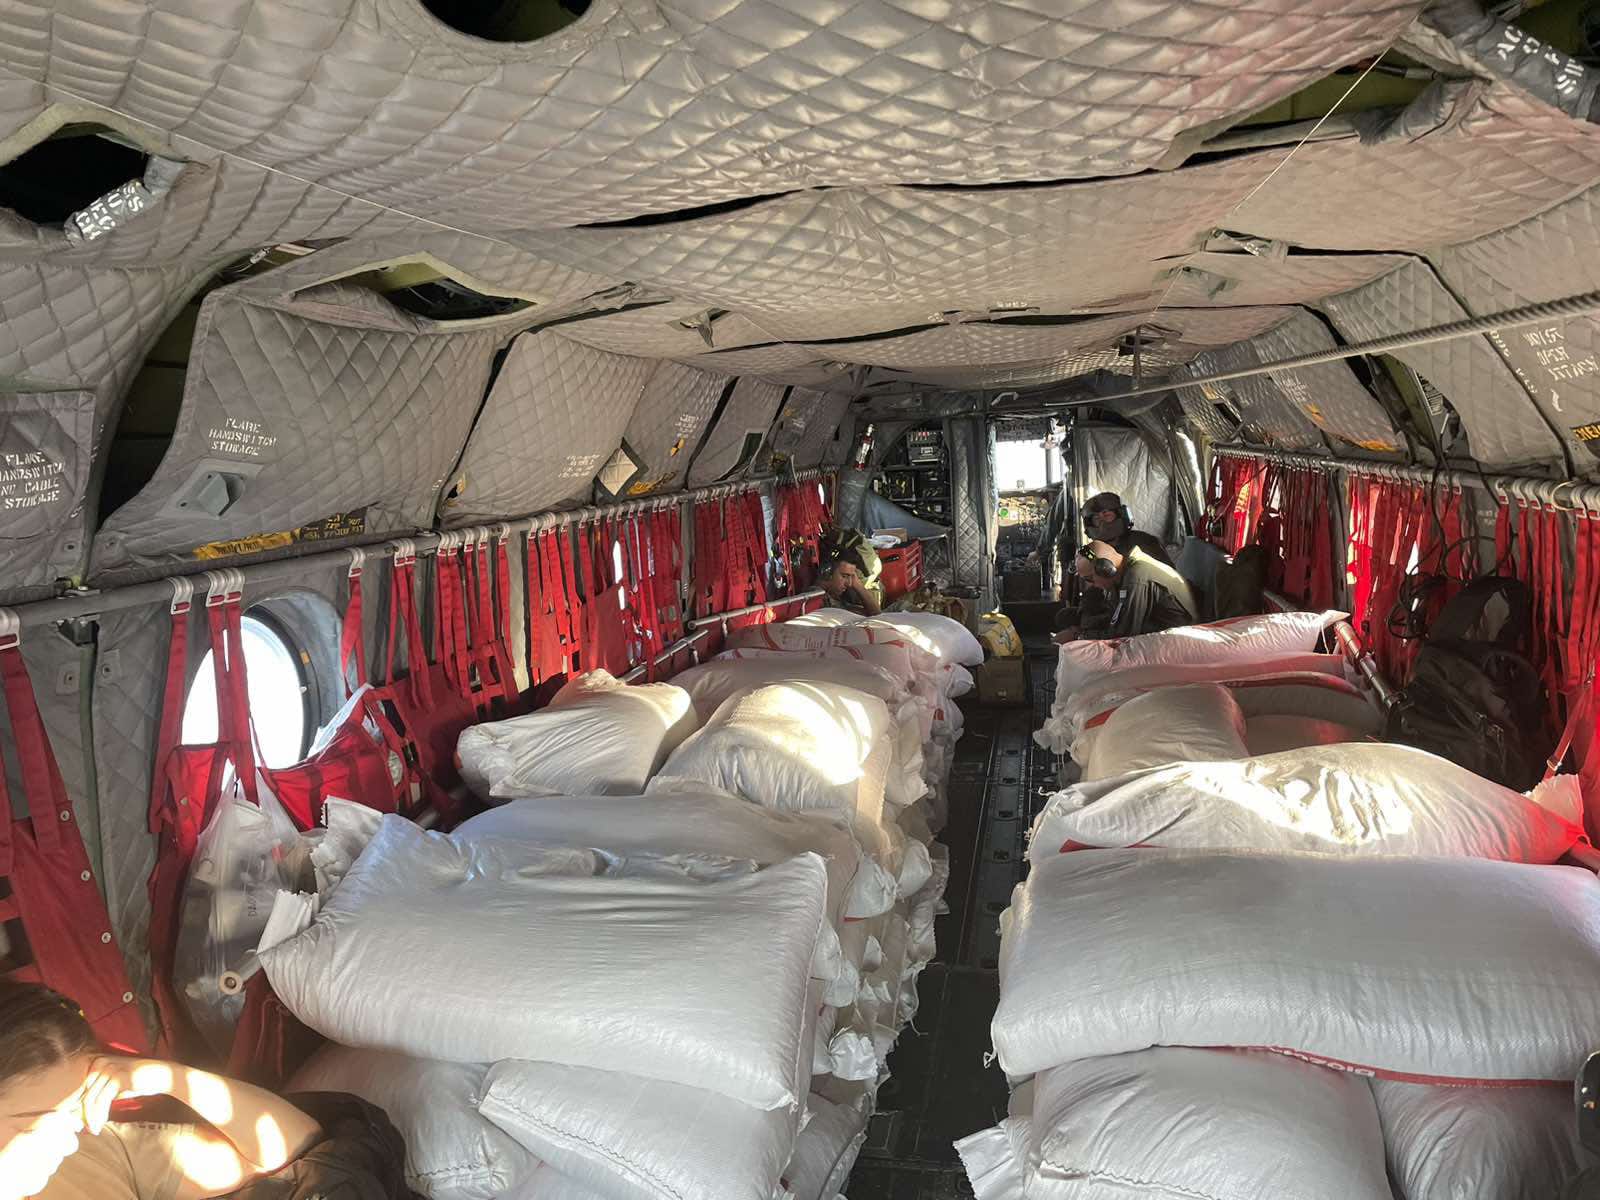 Θεσσαλία: Με ελικόπτερα της Πολιτικής Προστασίας οι πρώτες αποστολές ζωοτροφών στα απομακρυσμένα χωριά